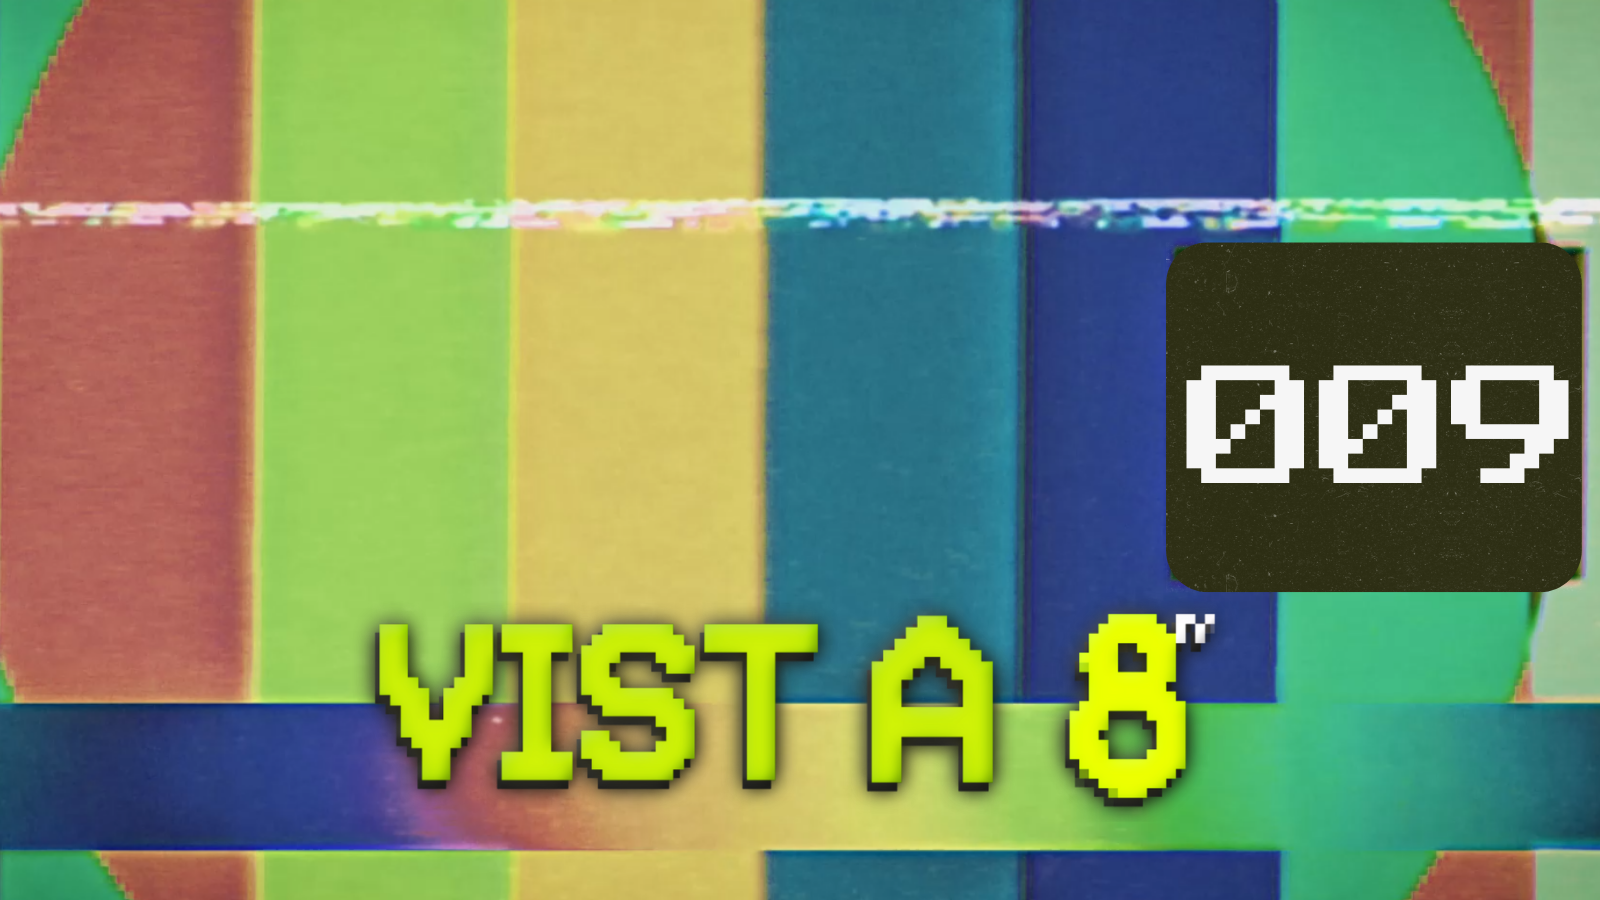 VIST A 8TV - EPISODI 9